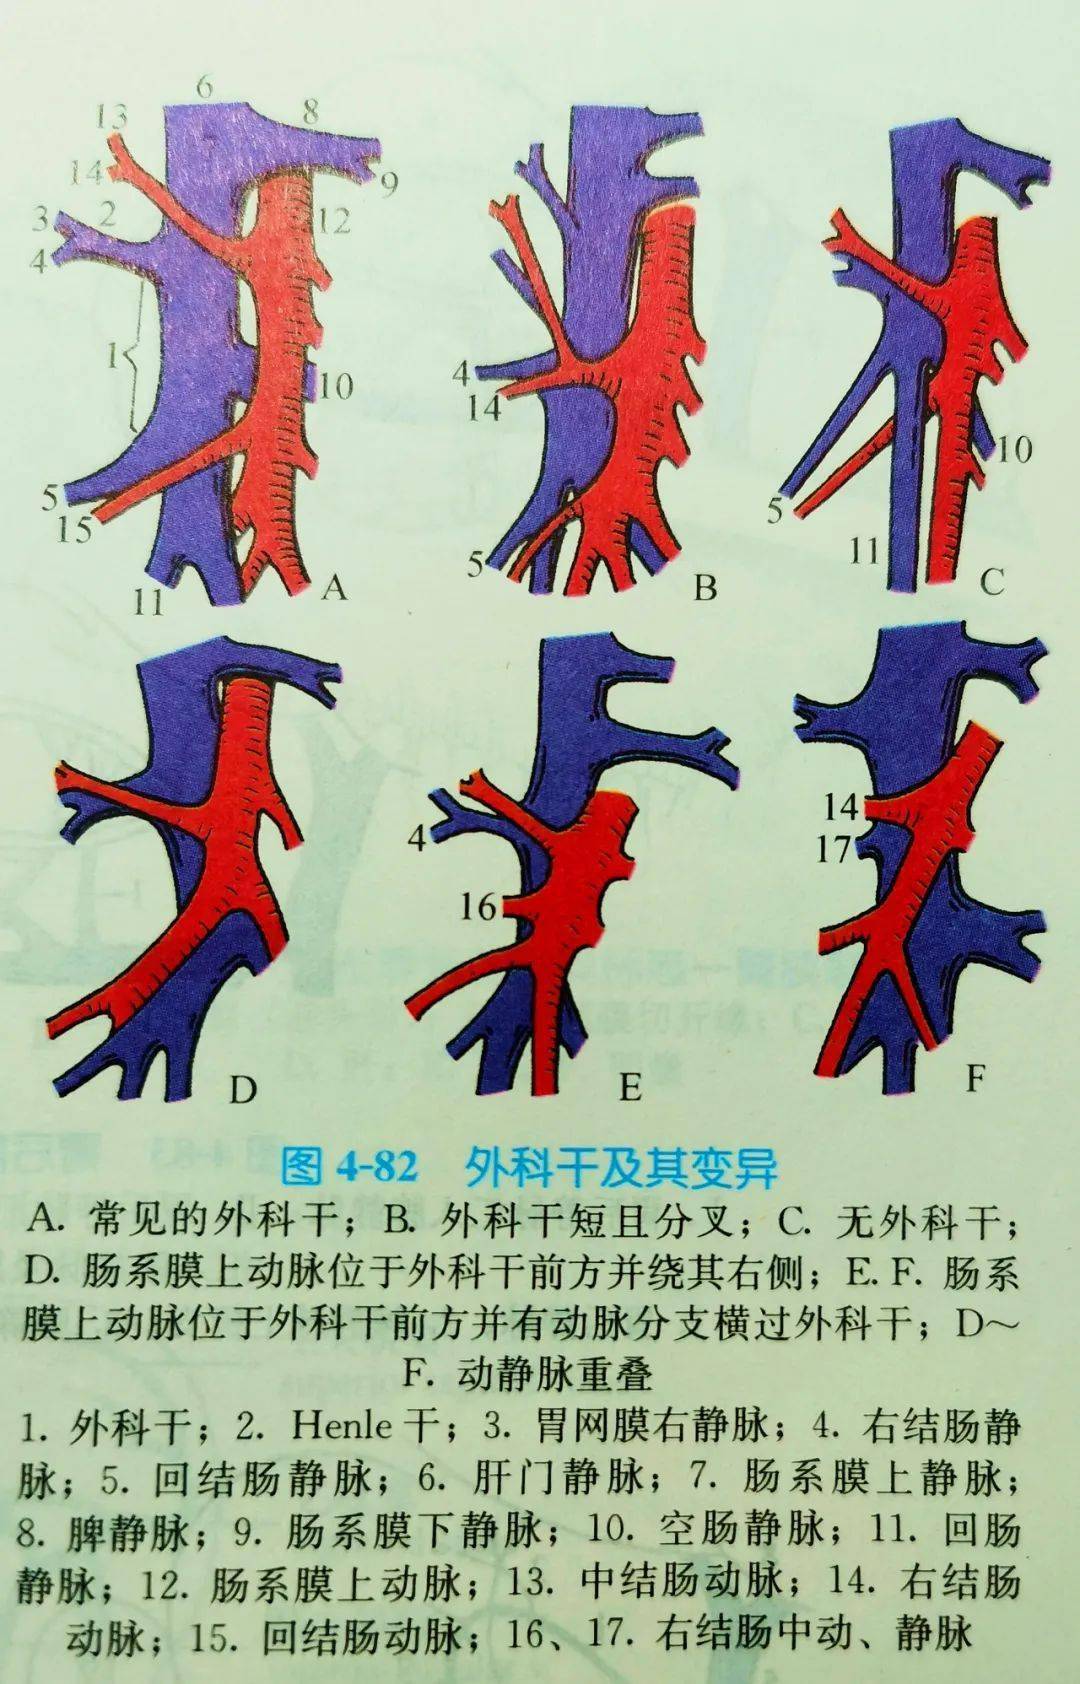 回结肠静脉与henle干之间的一段肠系膜上静脉成为外科干,长约3cm~4cm.